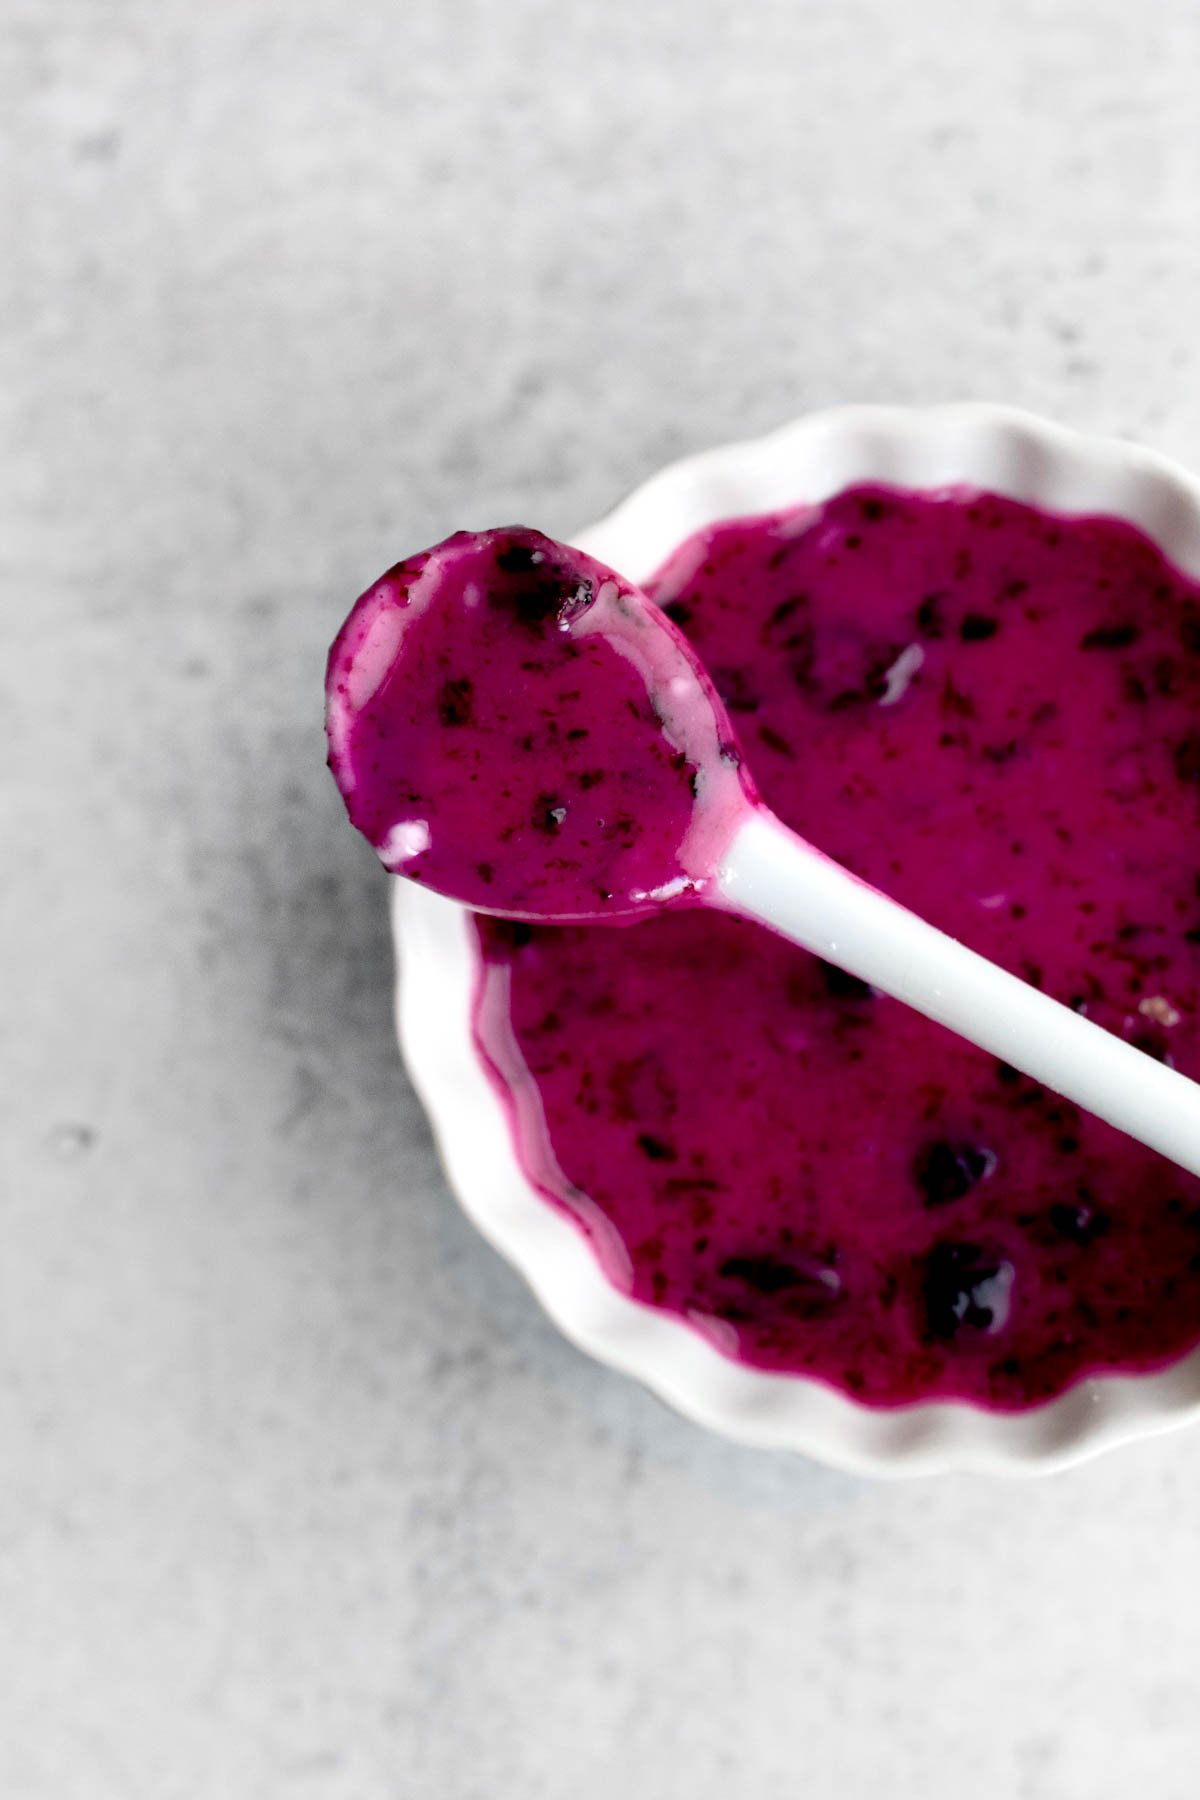 The blueberry glaze in a ramekin with a tiny ceramic spoon.